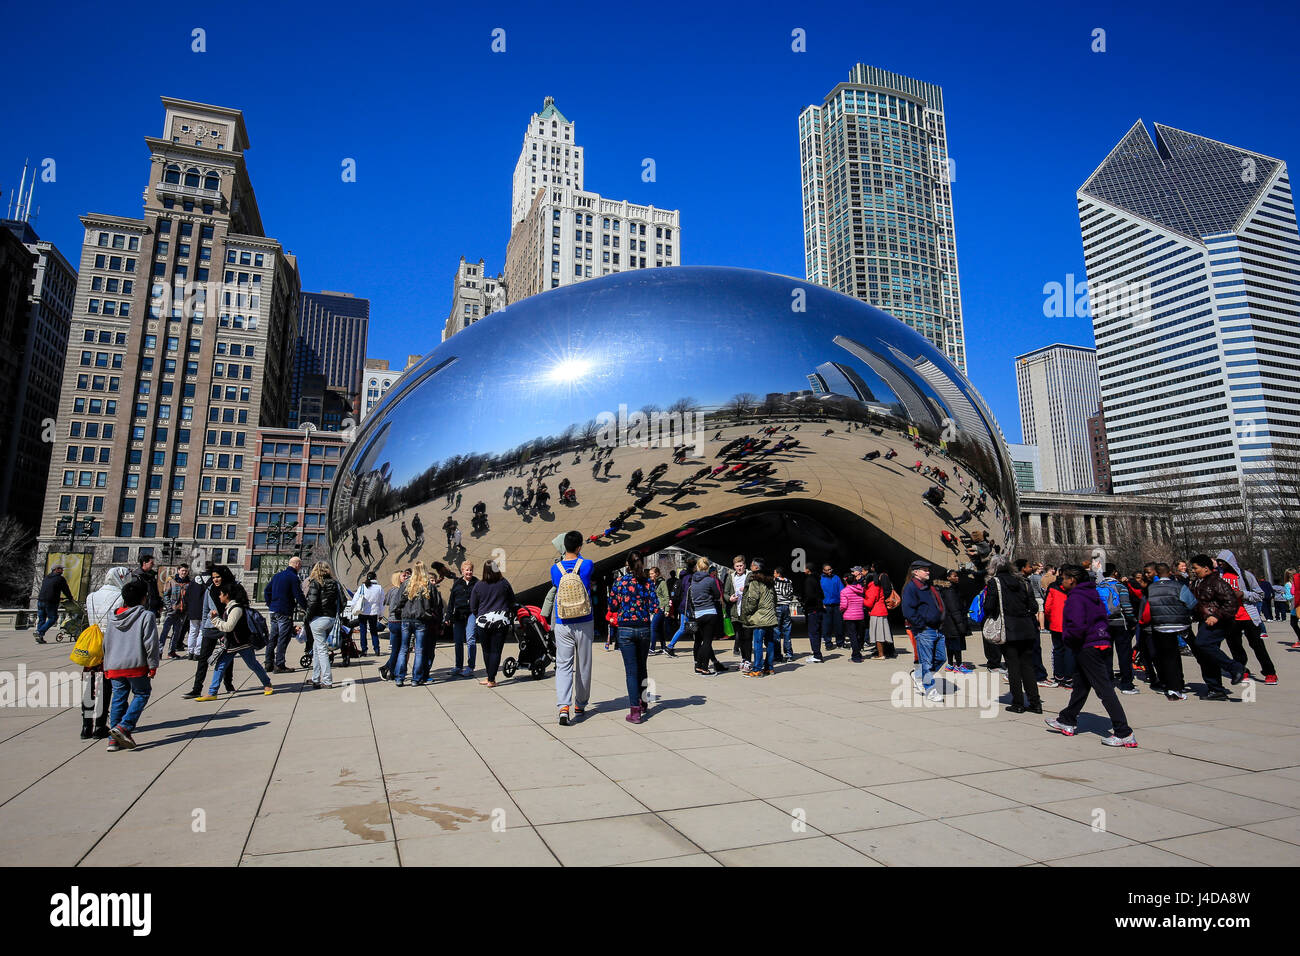 Les touristes visitent la sculpture Cloud Gate, le haricot, le Millennium Park, sur les toits de la ville, Chicago, Illinois, USA, Amérique, die Touristen besichtigen Sku Banque D'Images